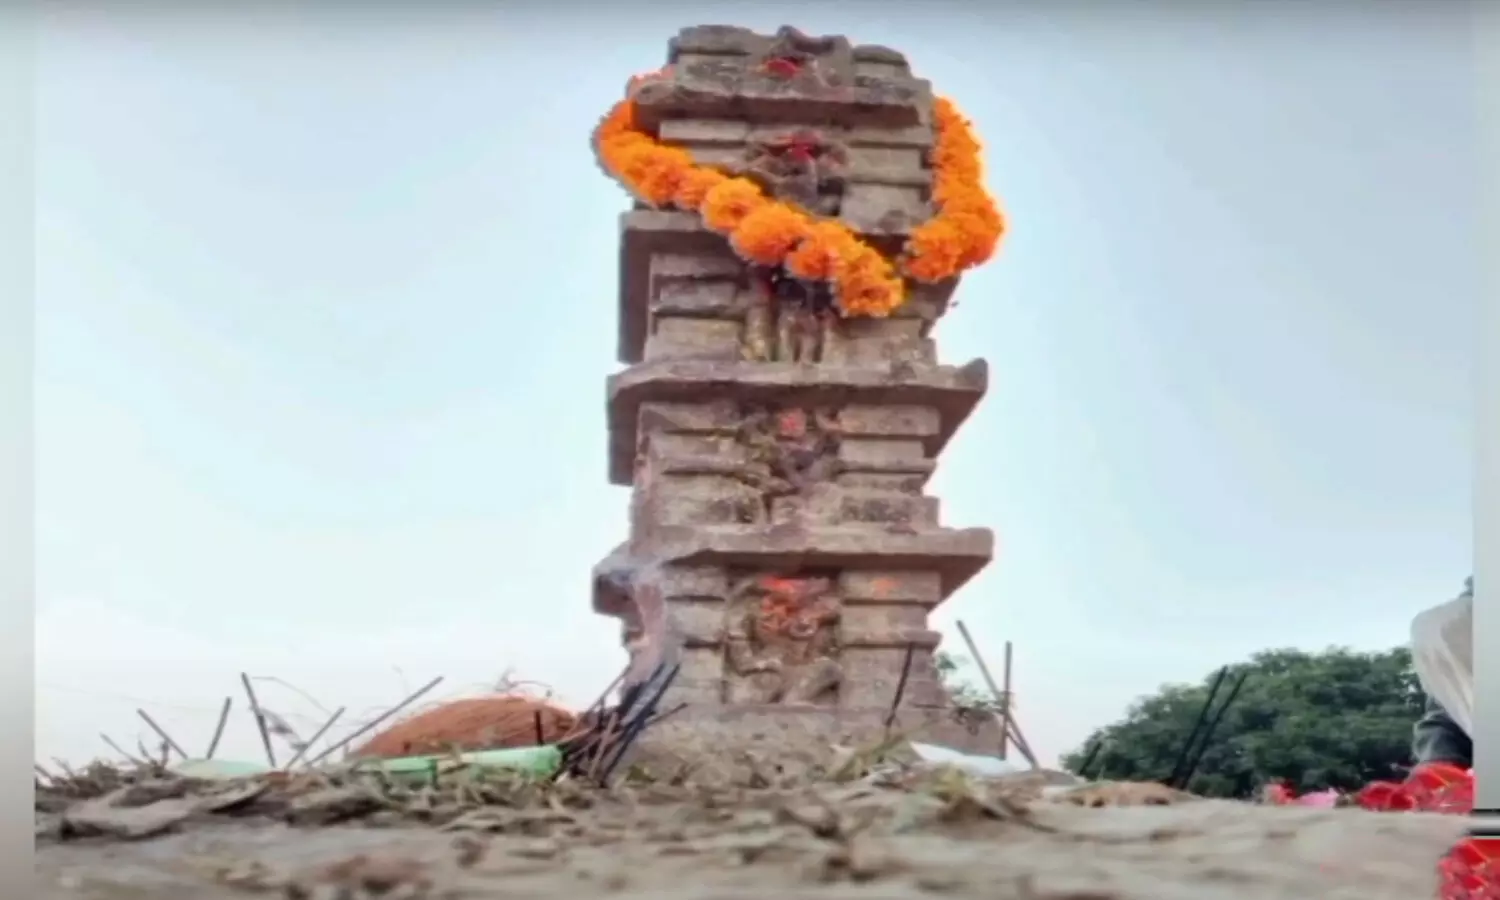 रीवा के देवरा गांव में खेत से निकली पौराणिक मूर्ति, बह रही भक्ति की बयार, पहुंच रहे बीमार और परेशान